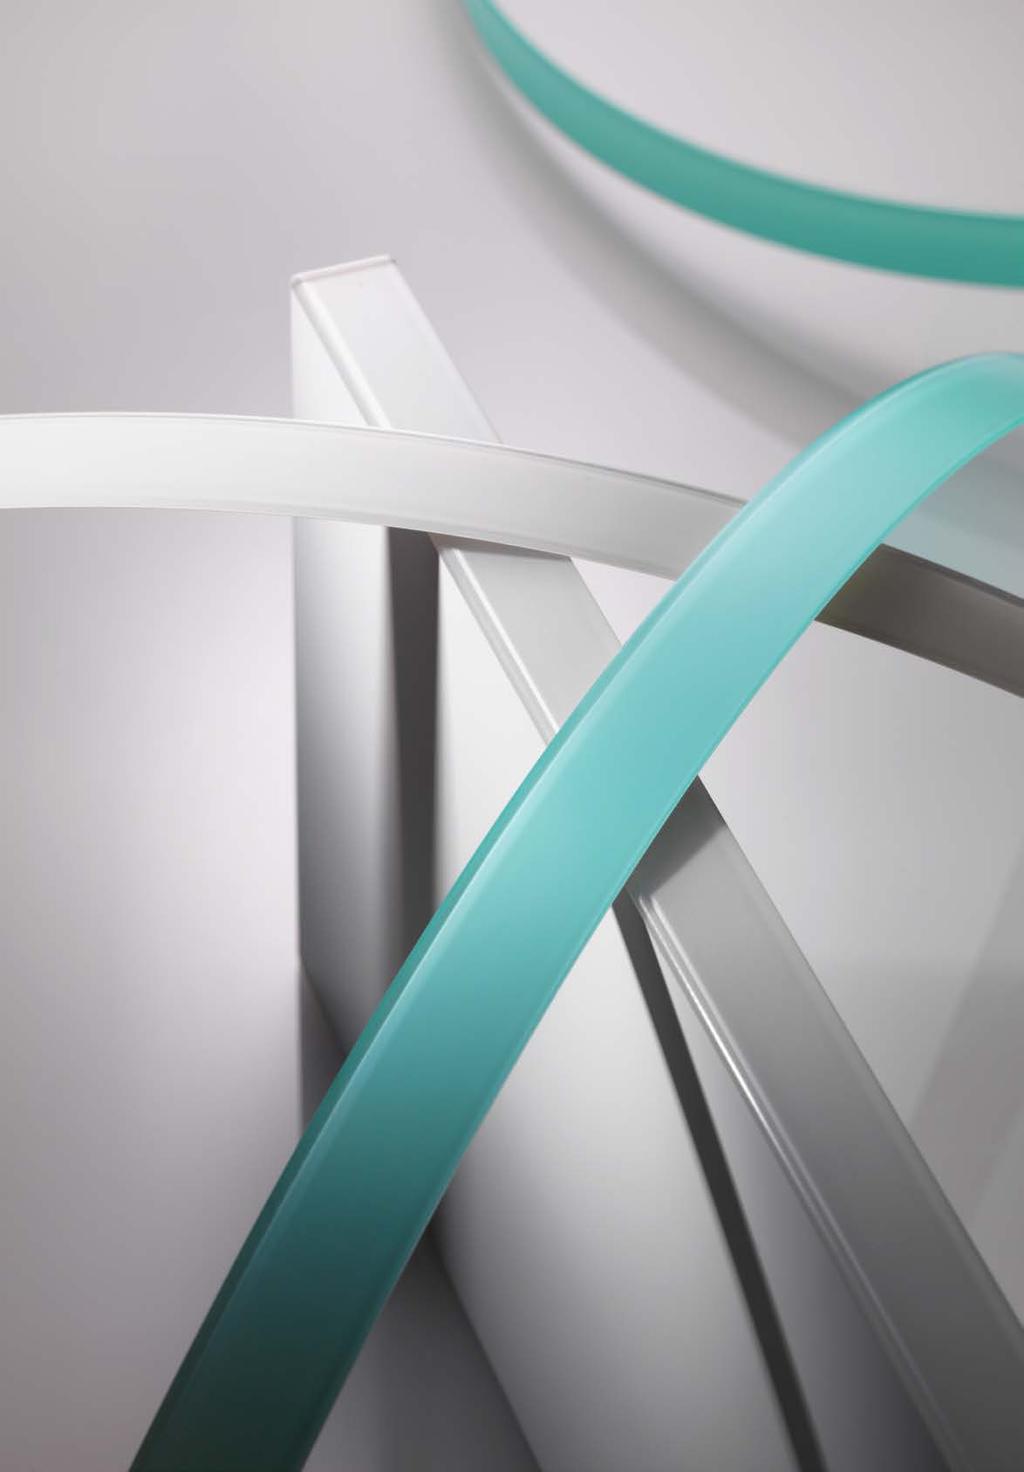 RAUKANTEX VISIONS Premium Selection: Glasoptik-Kanten Echtglasoptik! RAUKANTEX visions kombiniert die einzigartige Optik aus echtem Glas mit den positiven Charaktereigenschaften polymerer Werkstoffe.